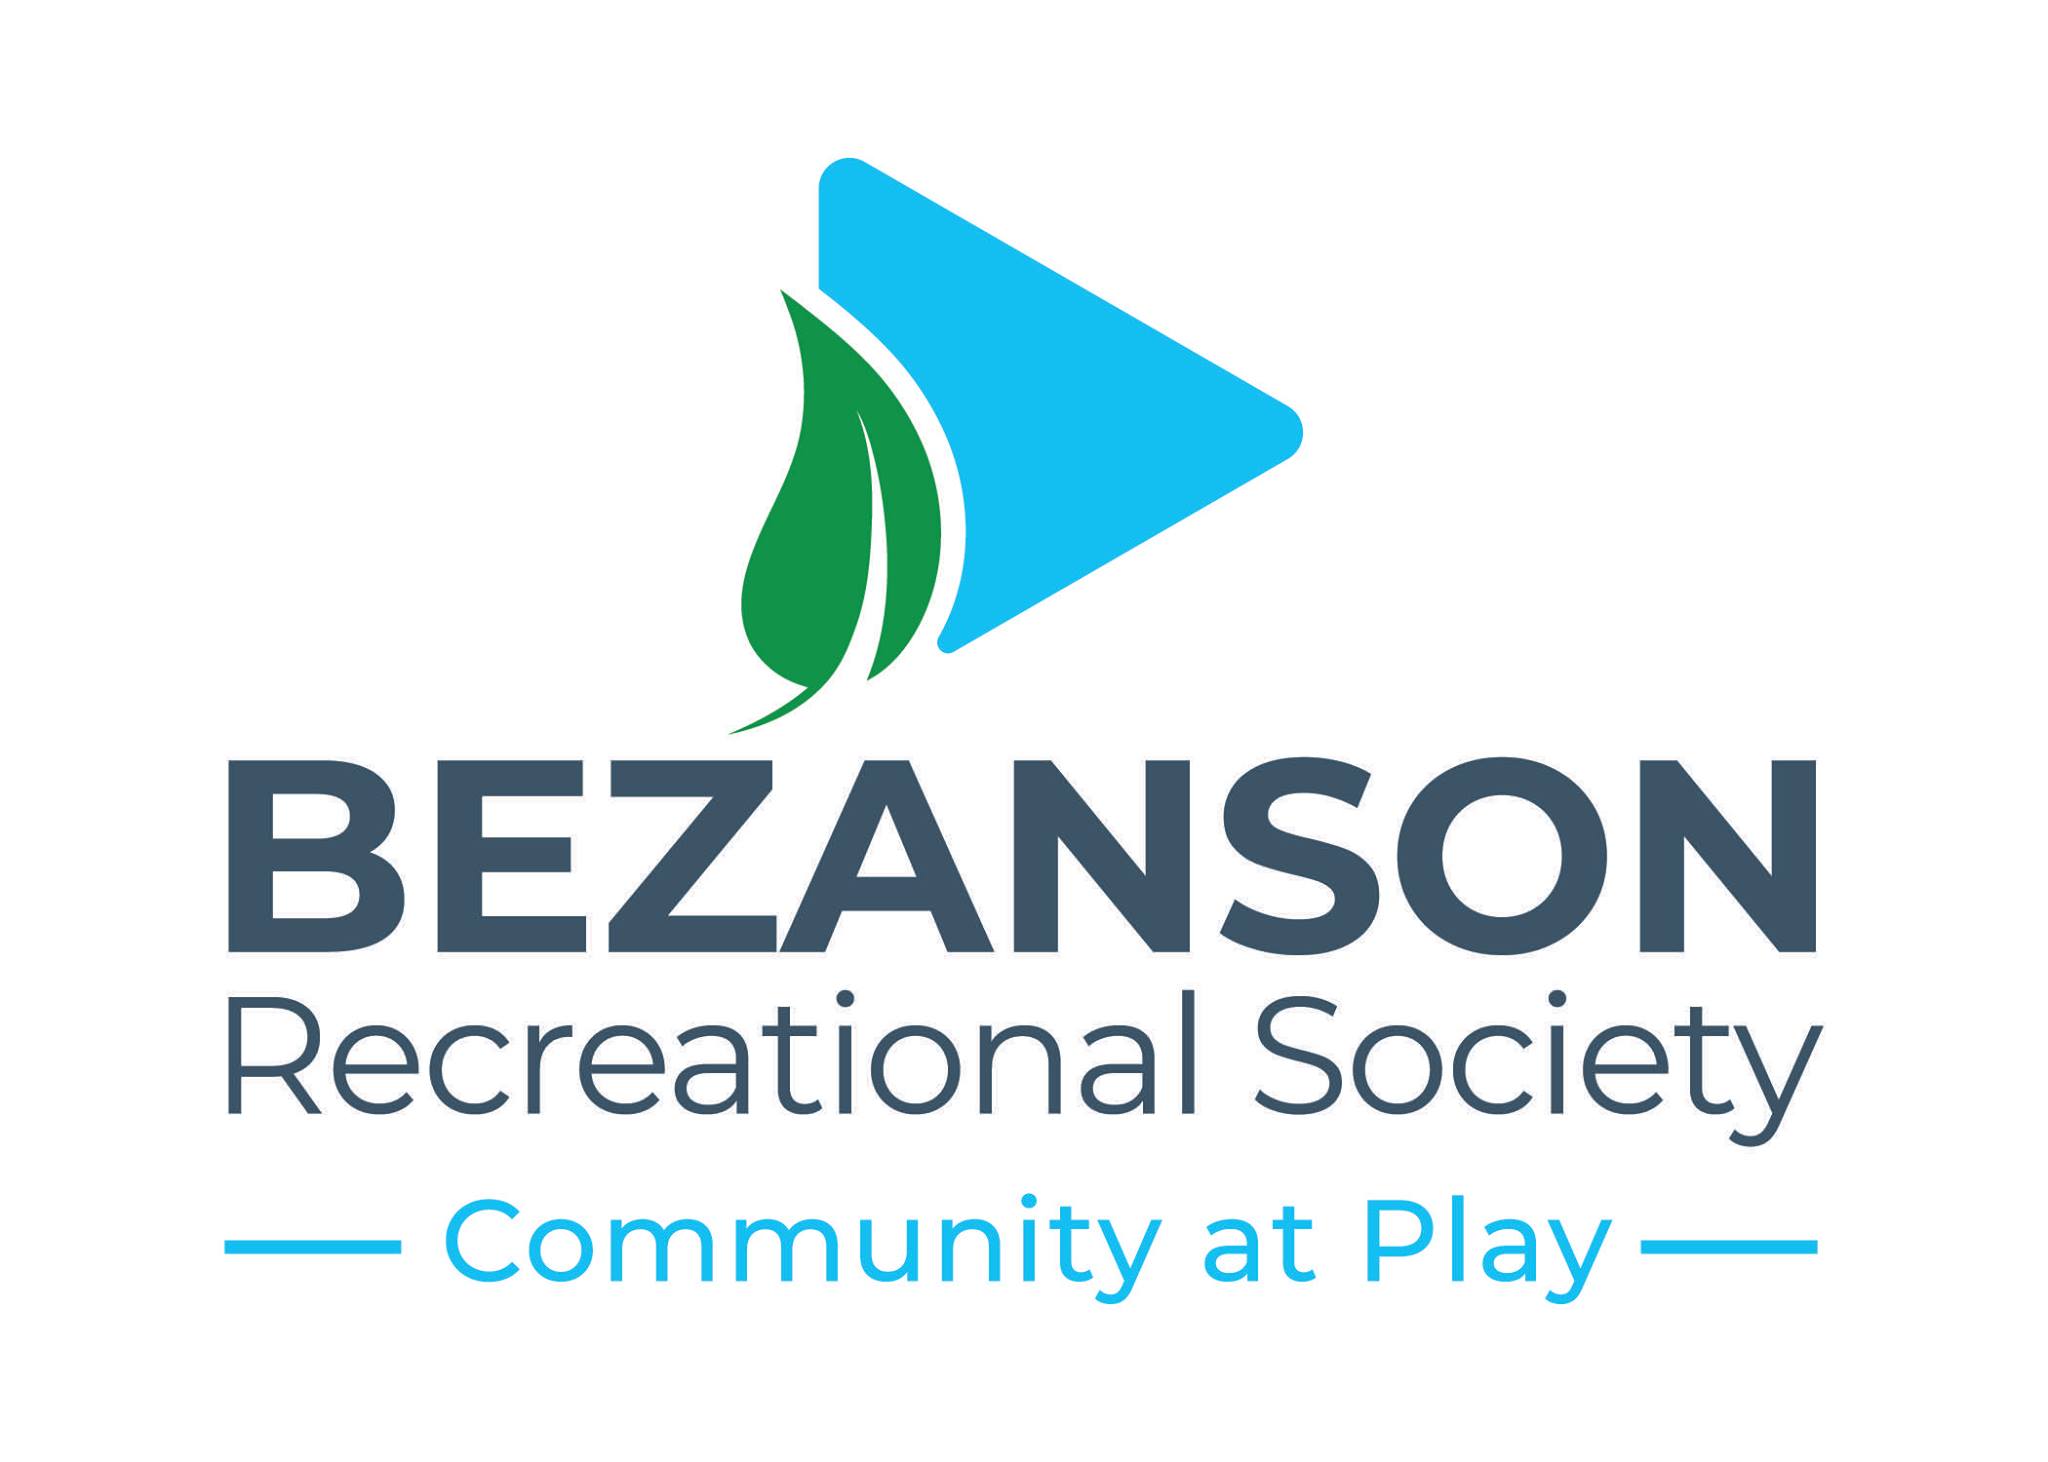 Bezanson Recreational Society